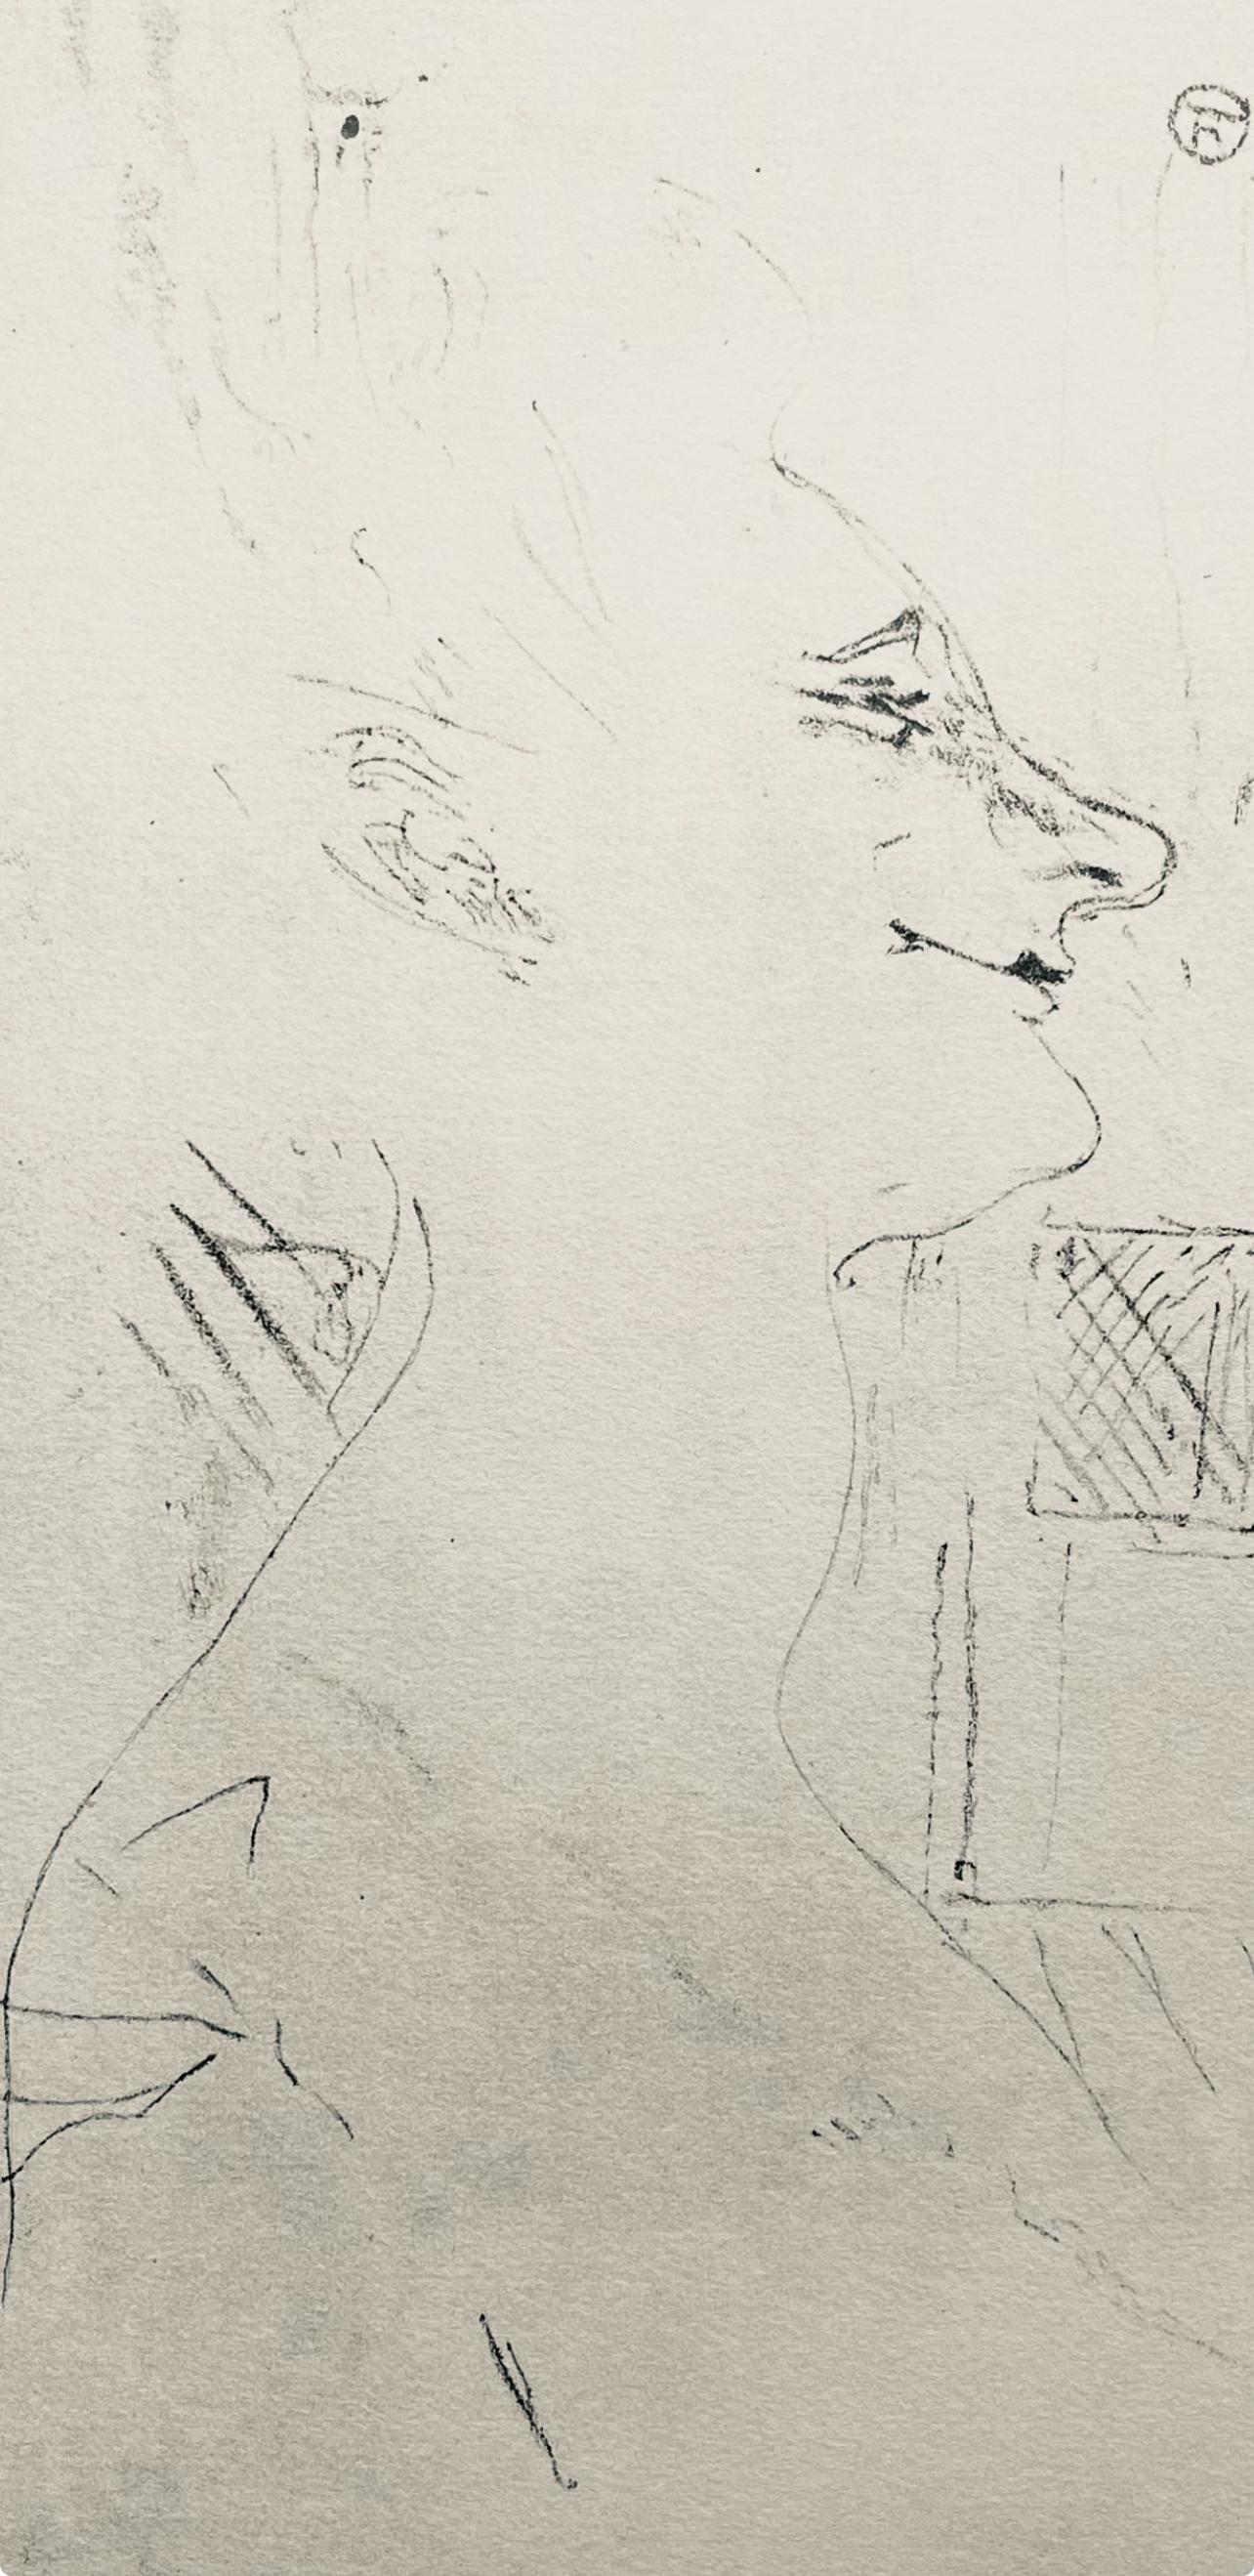 Toulouse-Lautrec, Composizione, Yvette Guilbert vue par Toulouse-Lautrec (dopo) - Print di Henri de Toulouse-Lautrec